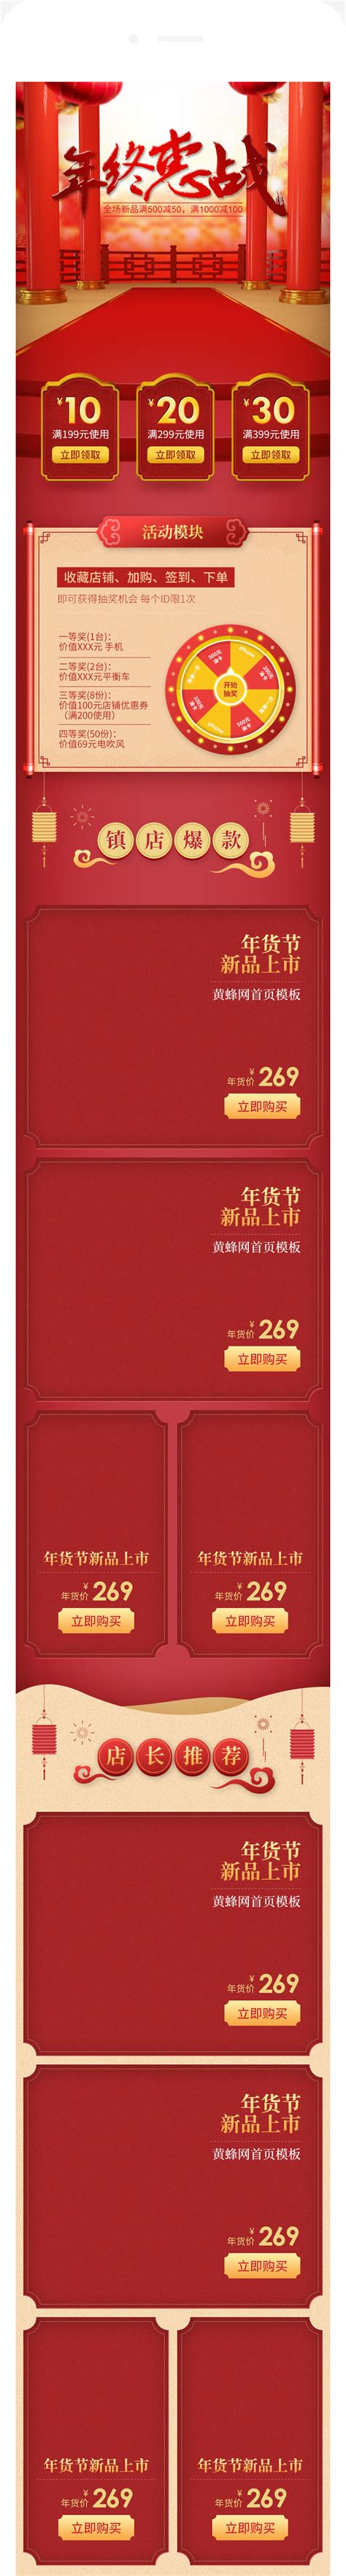 2017春节年货节网页设计案例欣赏-海淘科技